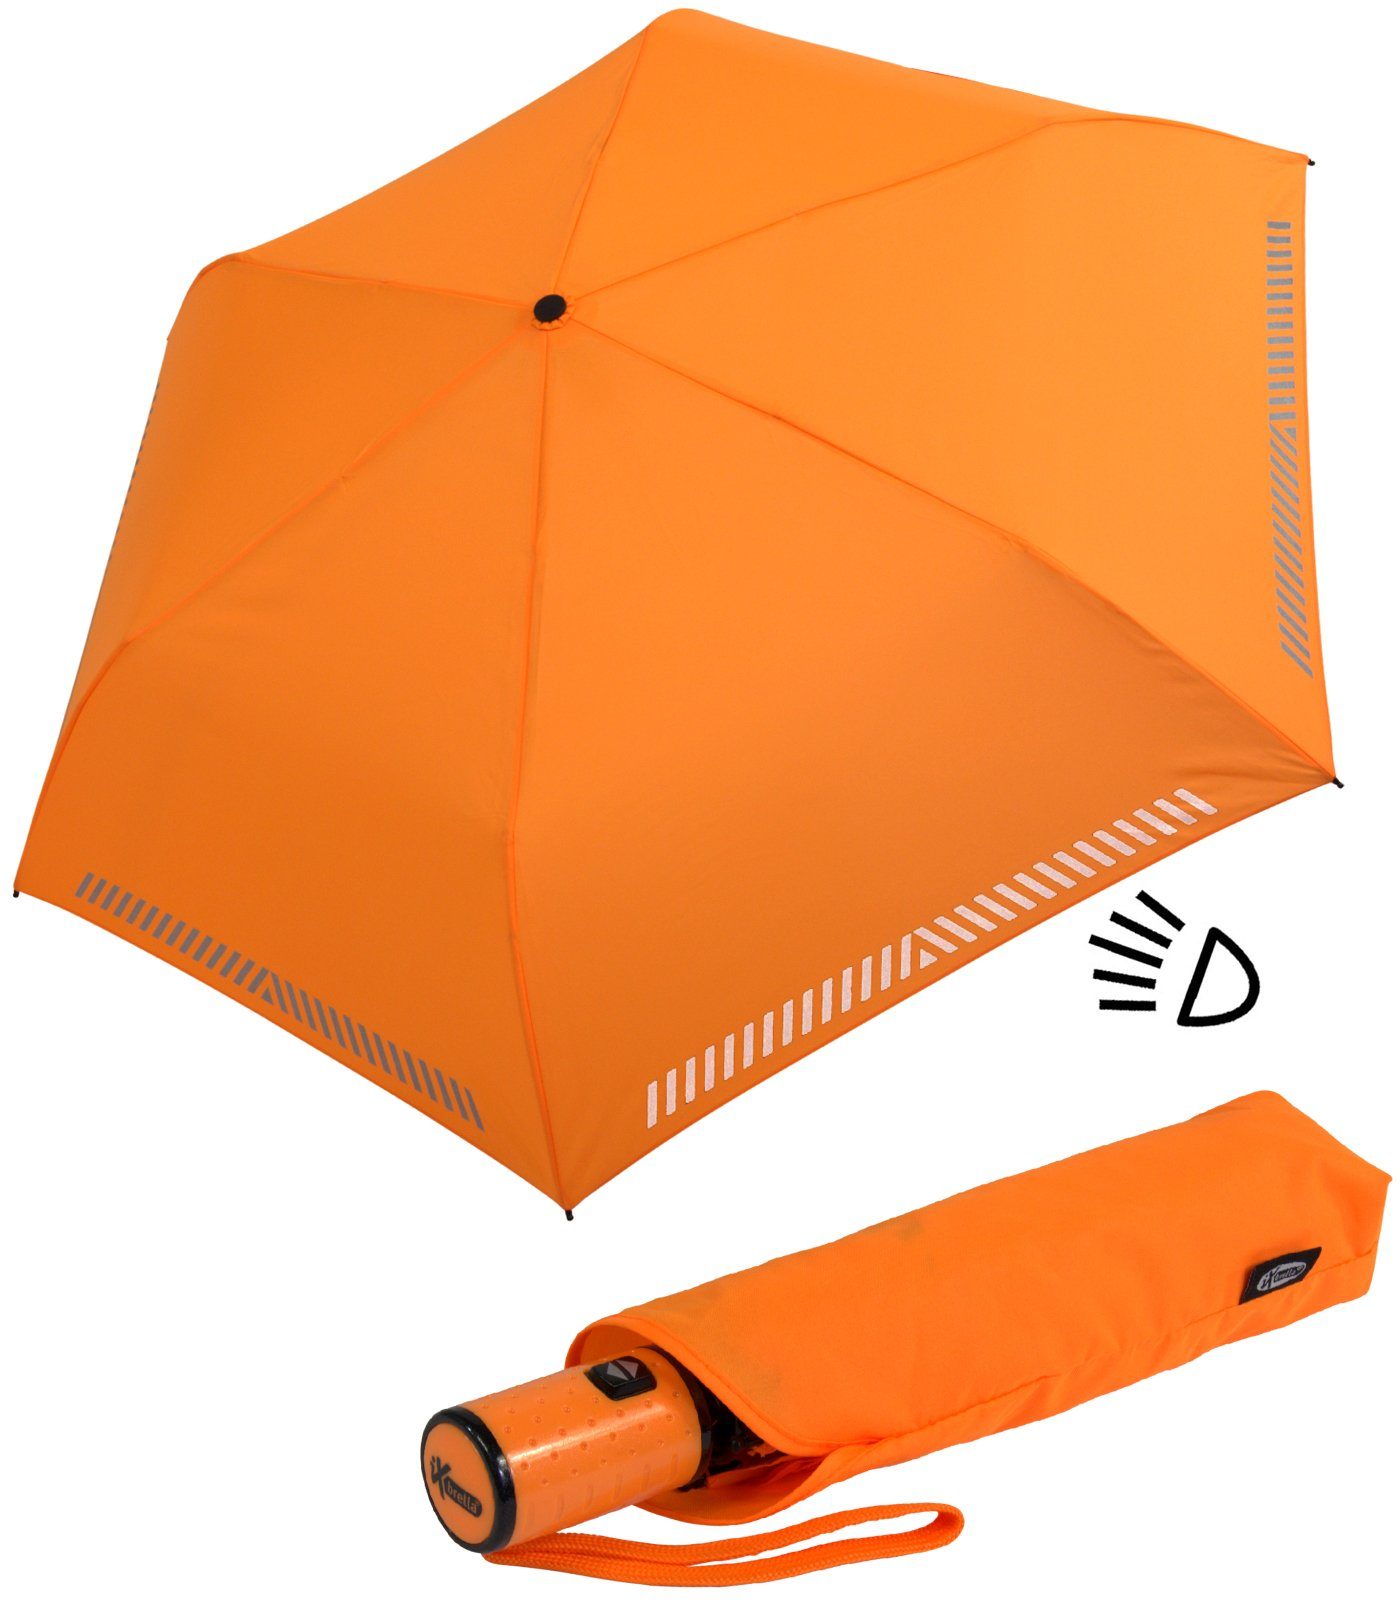 iX-brella Taschenregenschirm Kinderschirm mit durch reflektierend, neon Auf-Zu-Automatik, Reflex-Streifen Sicherheit orange 